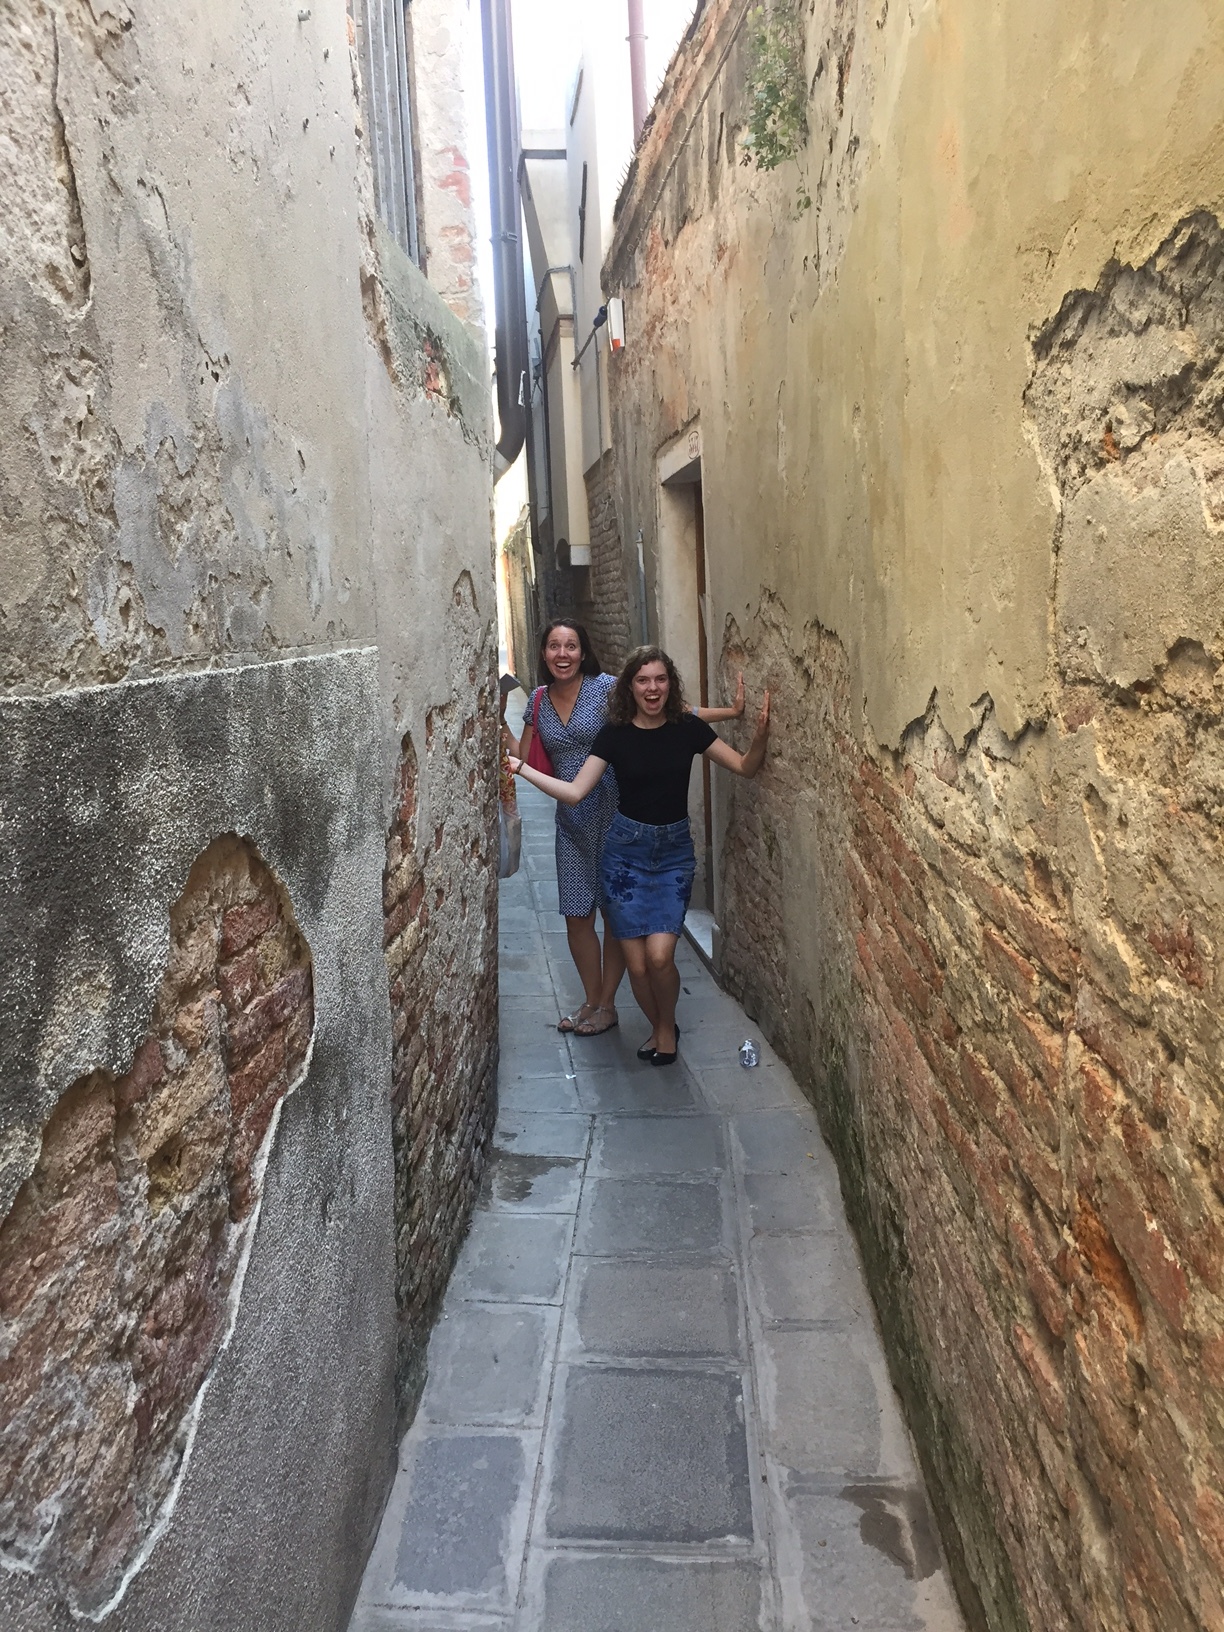 The narrow walkways of Venice Italy.